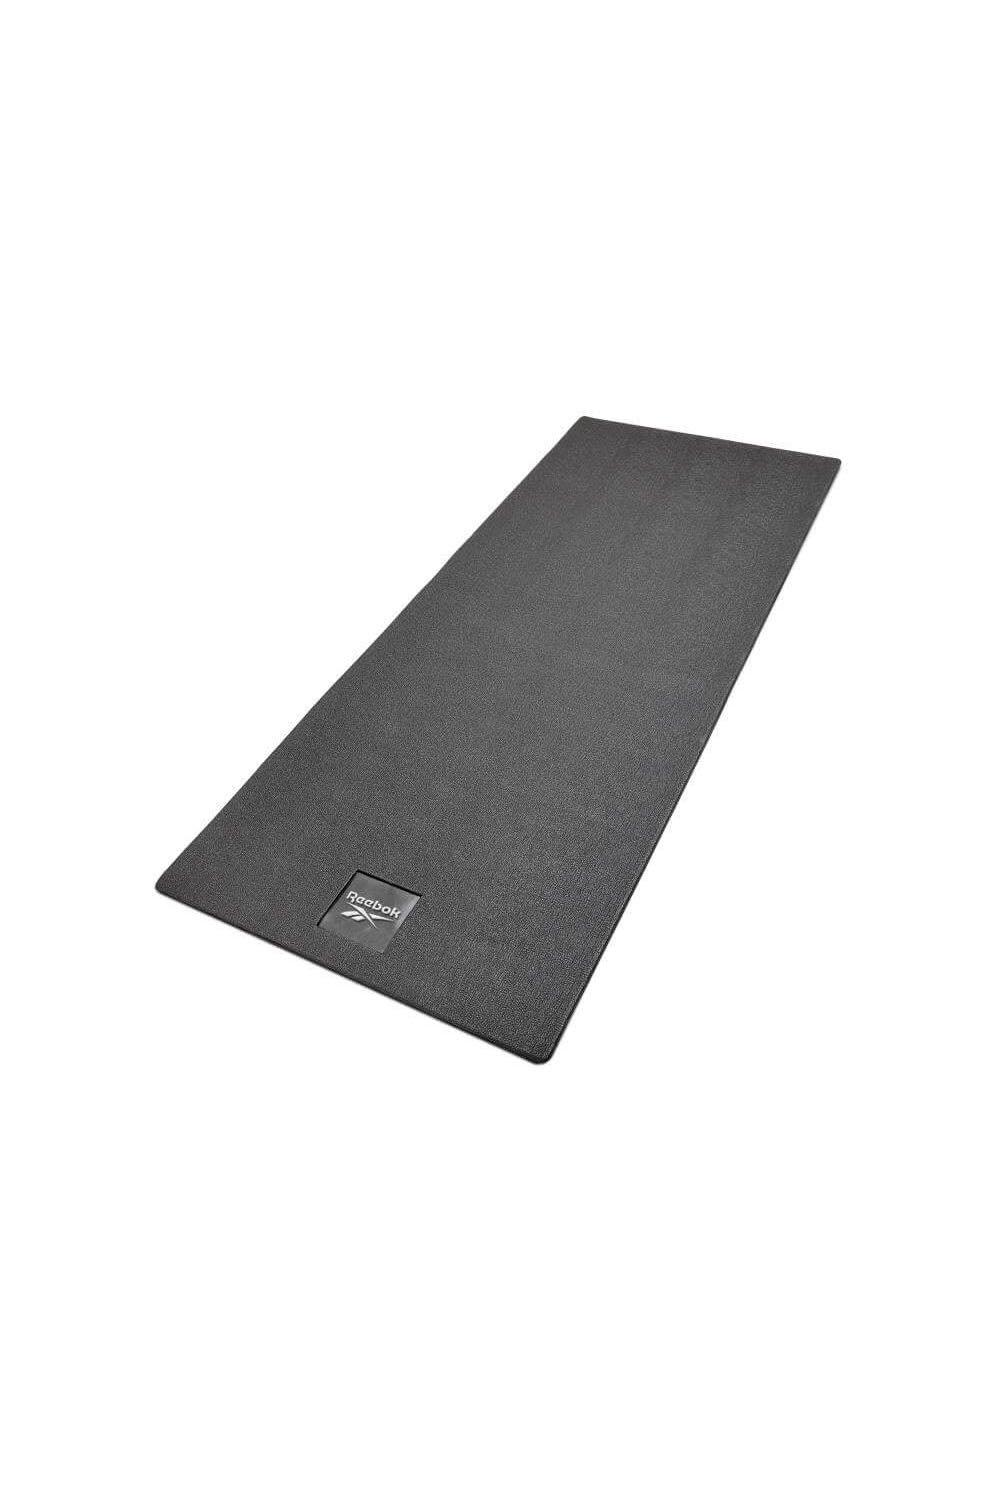 Reebok Treadmill Floor Mat|black